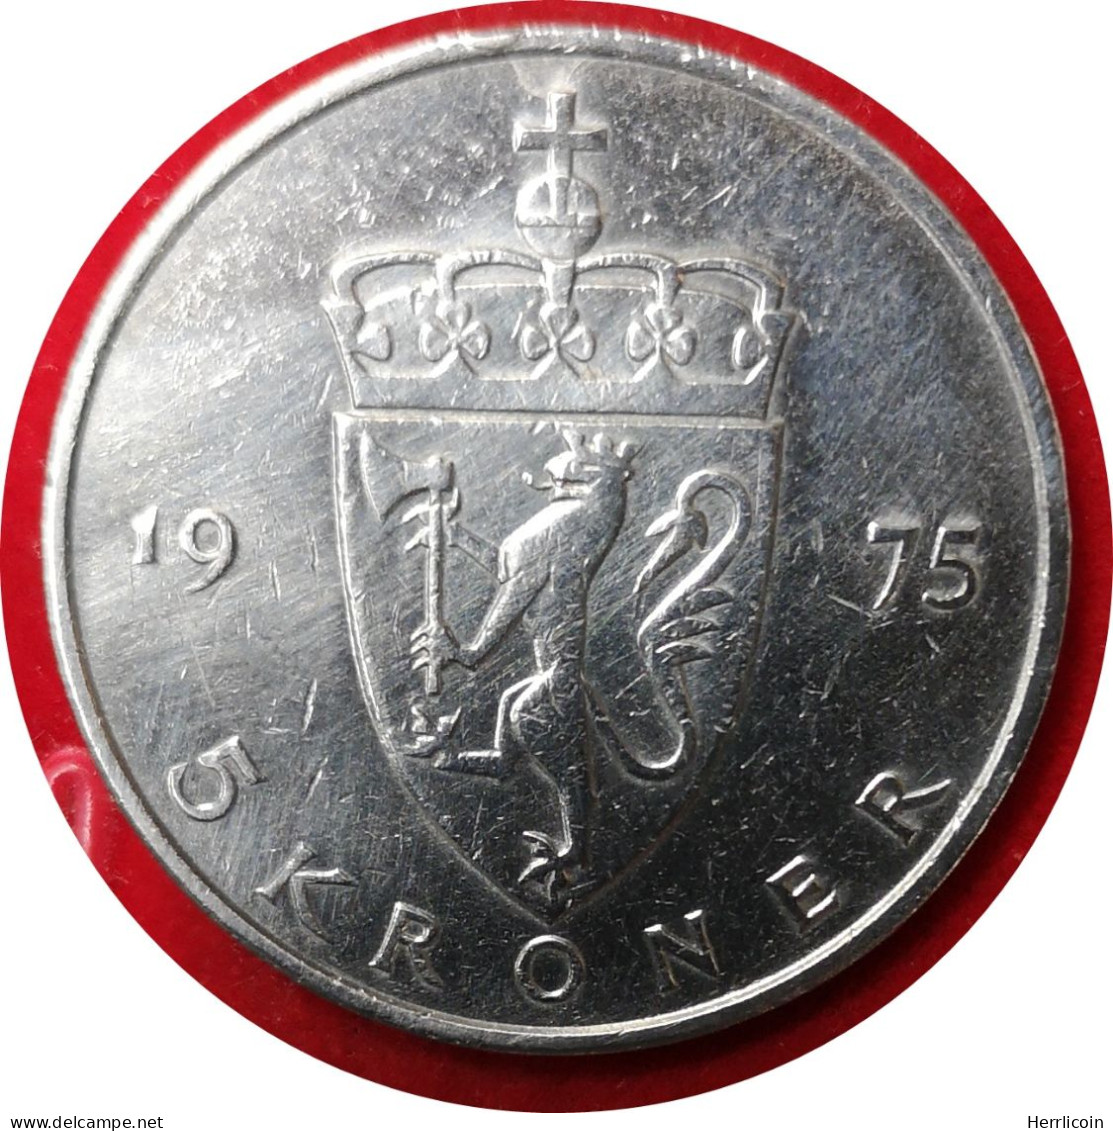 Monnaie Norvège - 1975 - 5 Kroner Olav V Type 2 - Norway